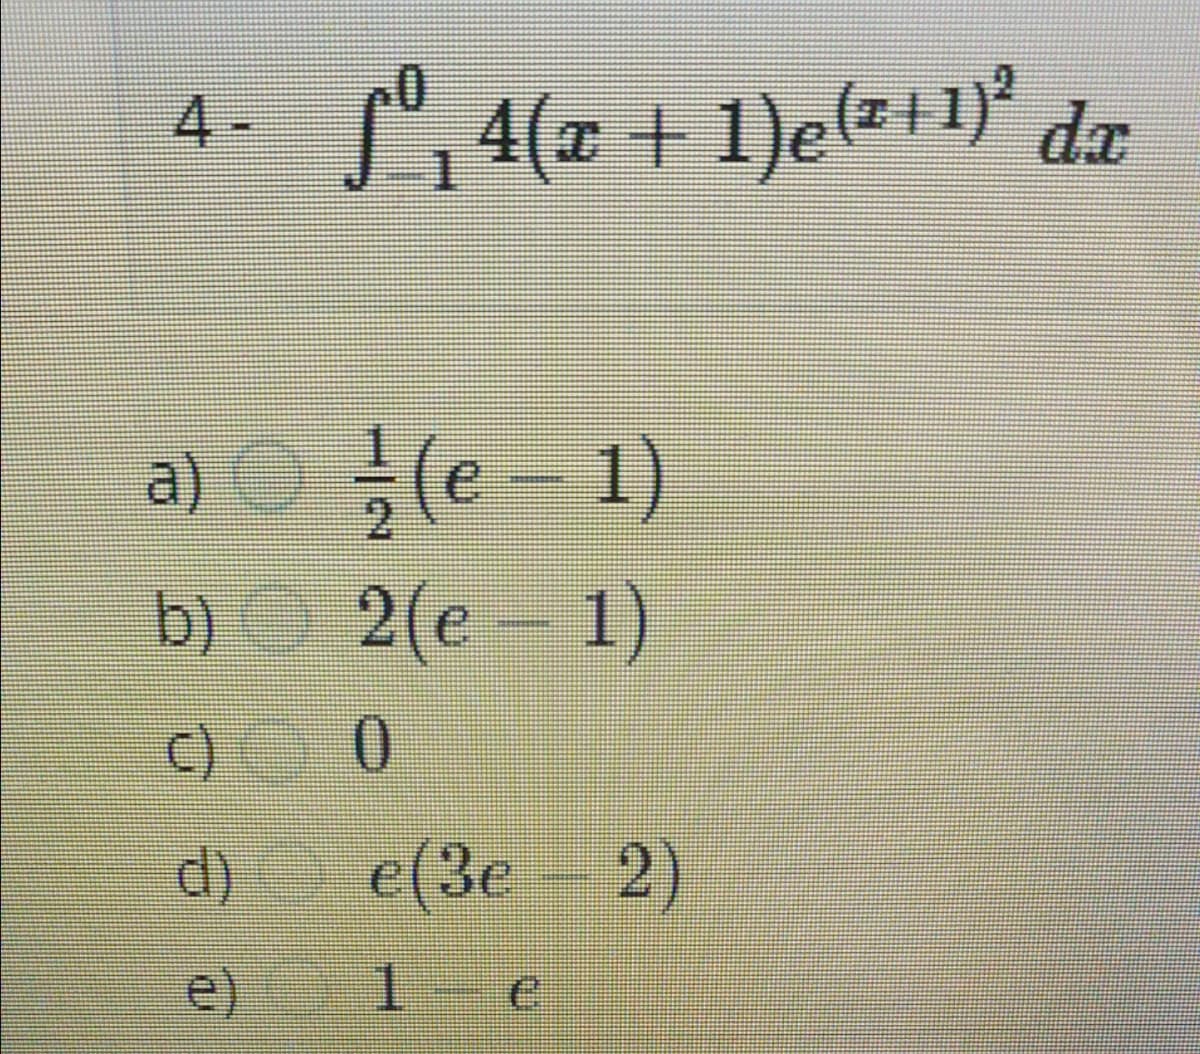 4- ", 4(x + 1)e(z+1)*
da
a)
글 (e
He
1)
2
b) 2(e
- 1)
C) 0
.
d)
e(3e 2)
